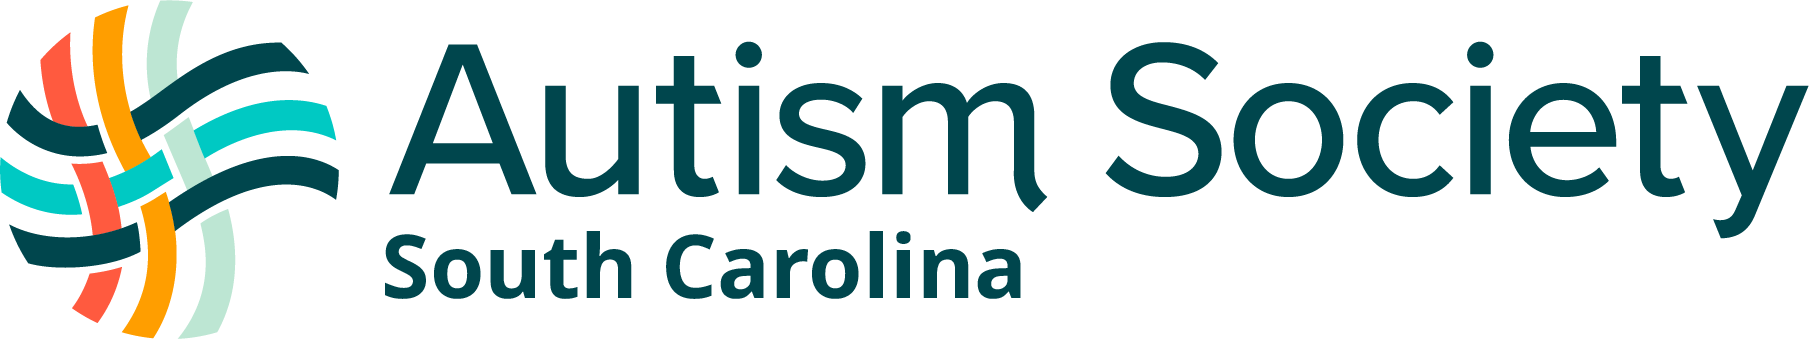 South Carolina Autism Society